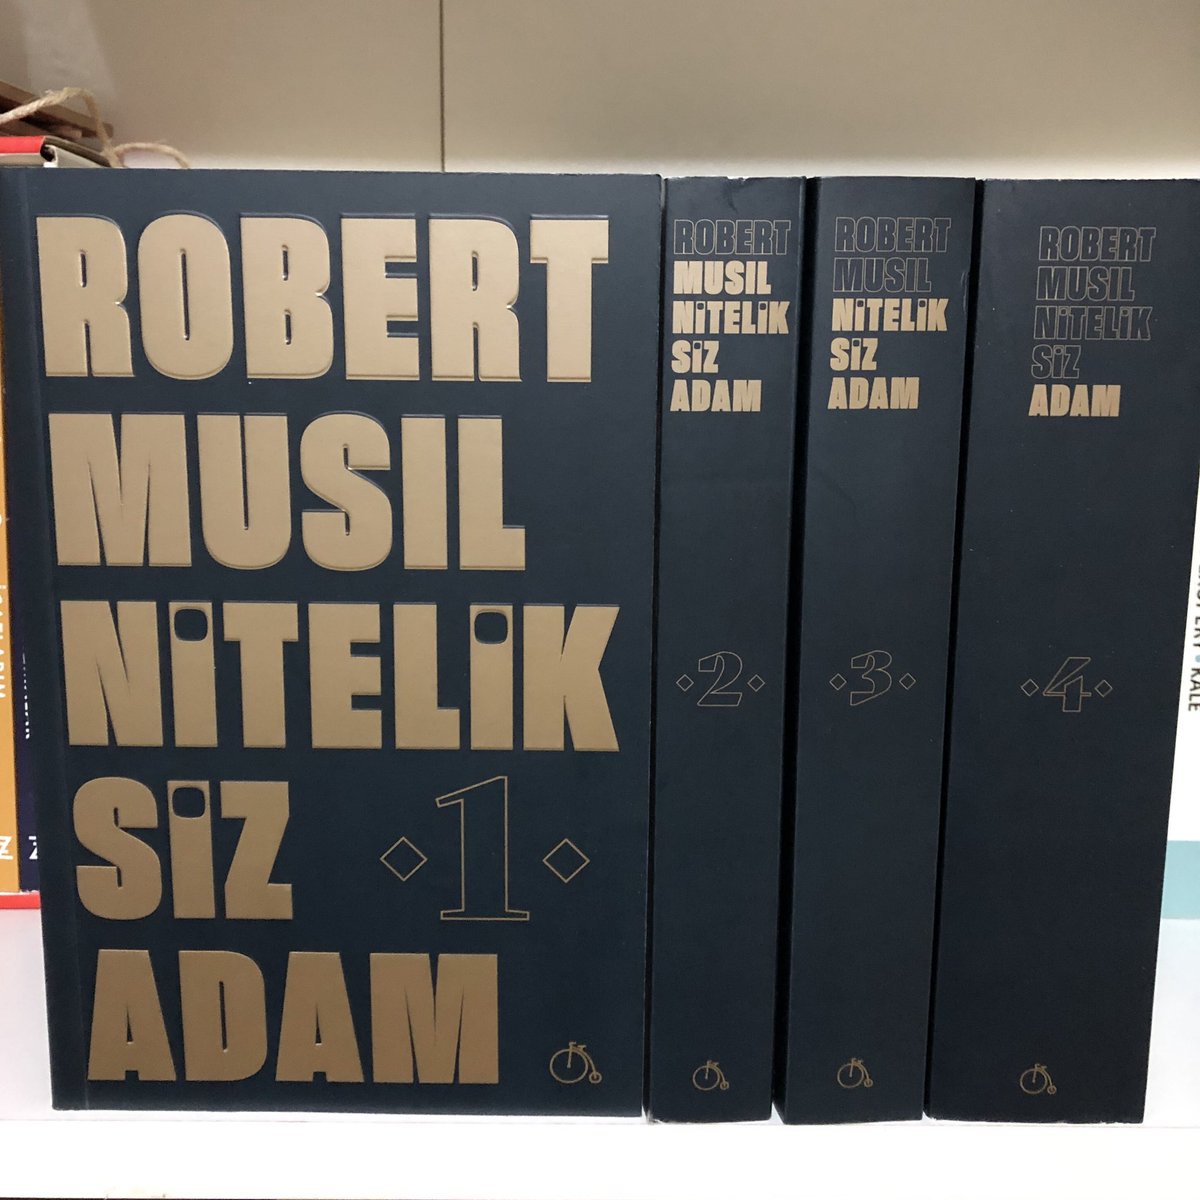 Robert Musil’in efsane eseri “Niteliksiz Adam” 4 ciltlik tam metniyle ilk kez Türkçe’de. 

Hesabımızı takip & rt eden 3 kişiye #NiteliksizAdam setini hediye ediyoruz. #robertmusil